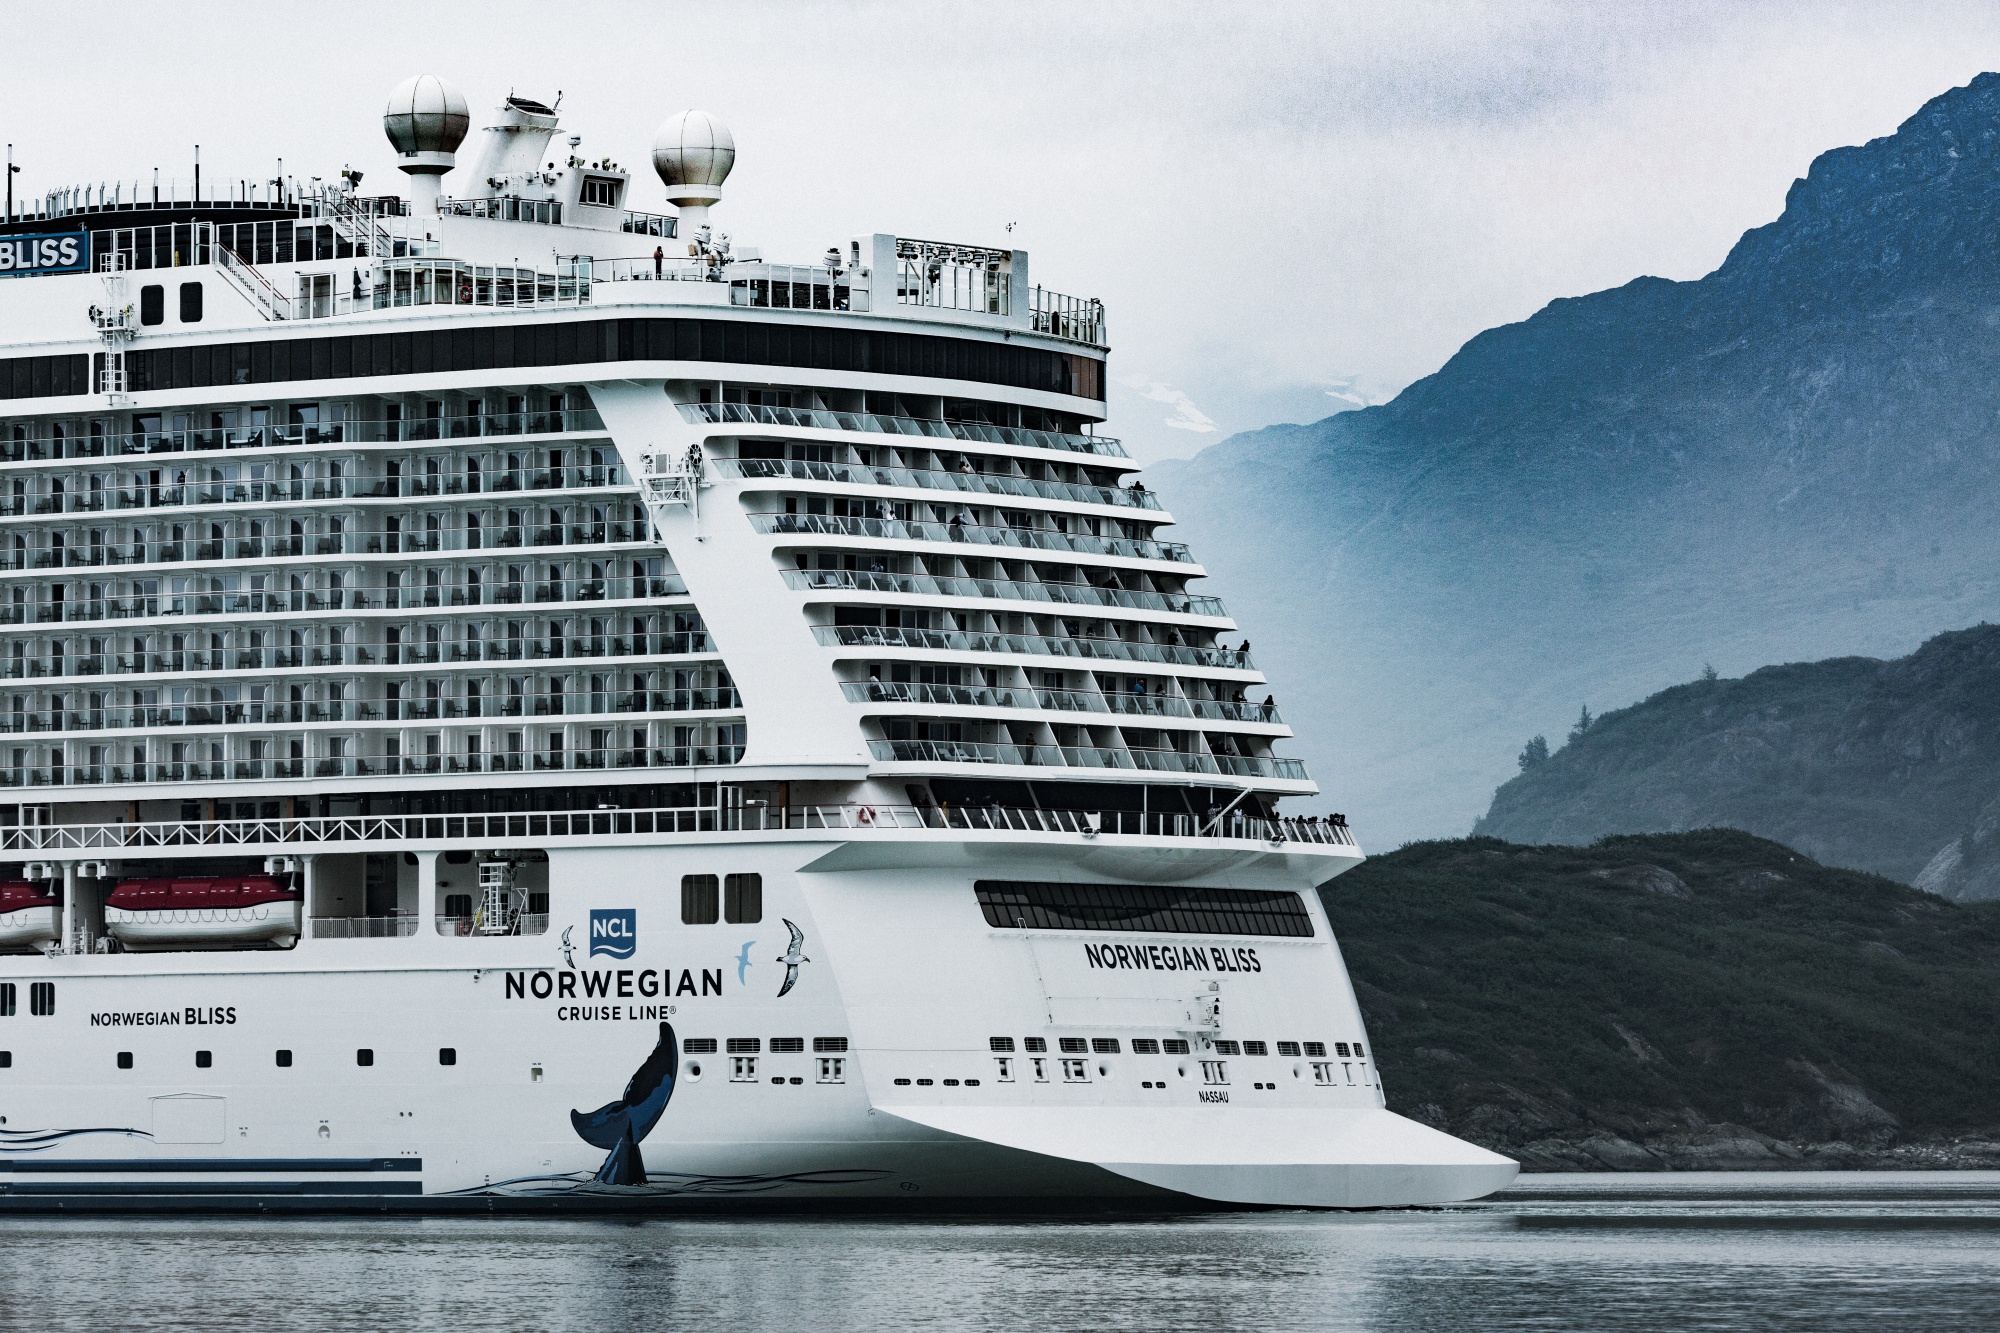 L Catterton Makes $600 Million Return on Norwegian Cruise Bonds - Bloomberg